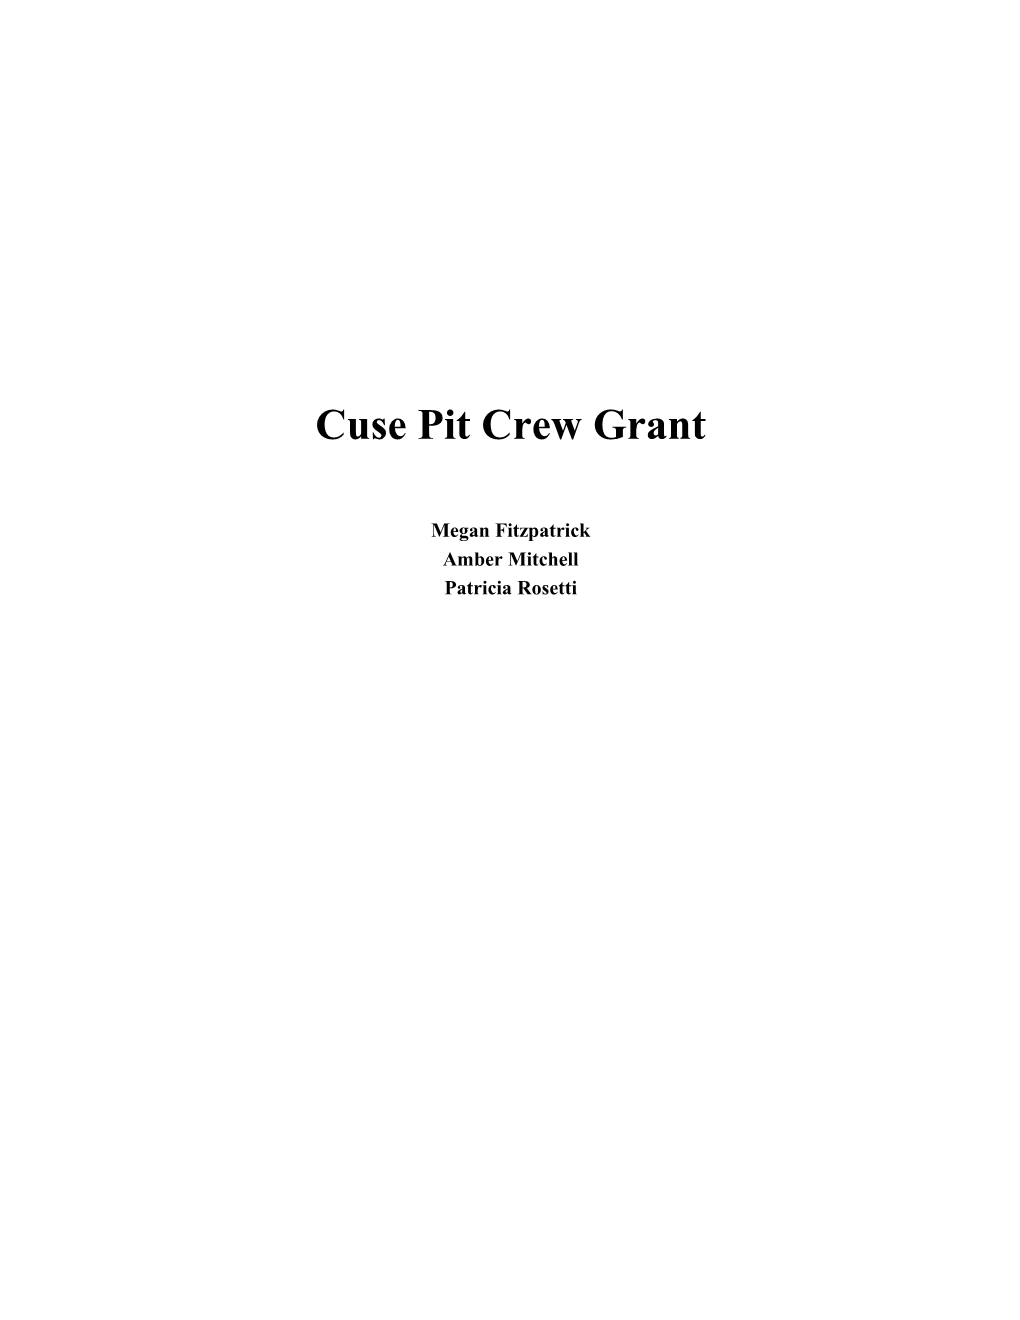 Cuse Pit Crew Grant